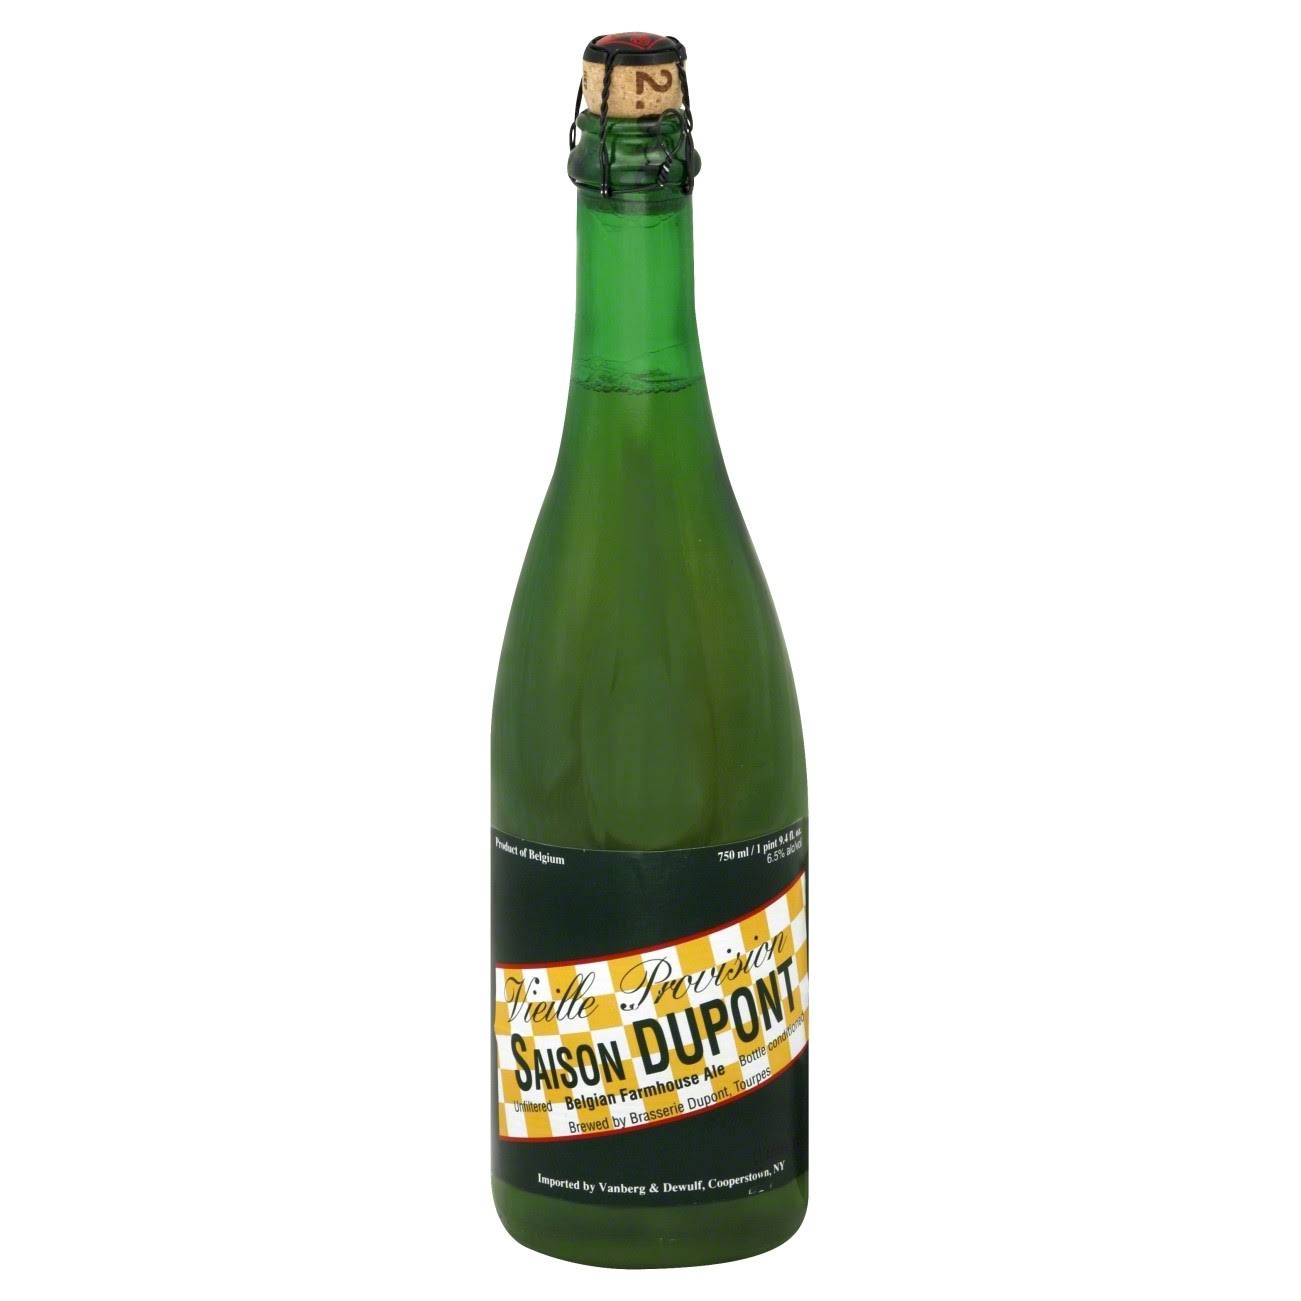 Saison Dupont Farmhouse Ale - 750 ml bottle